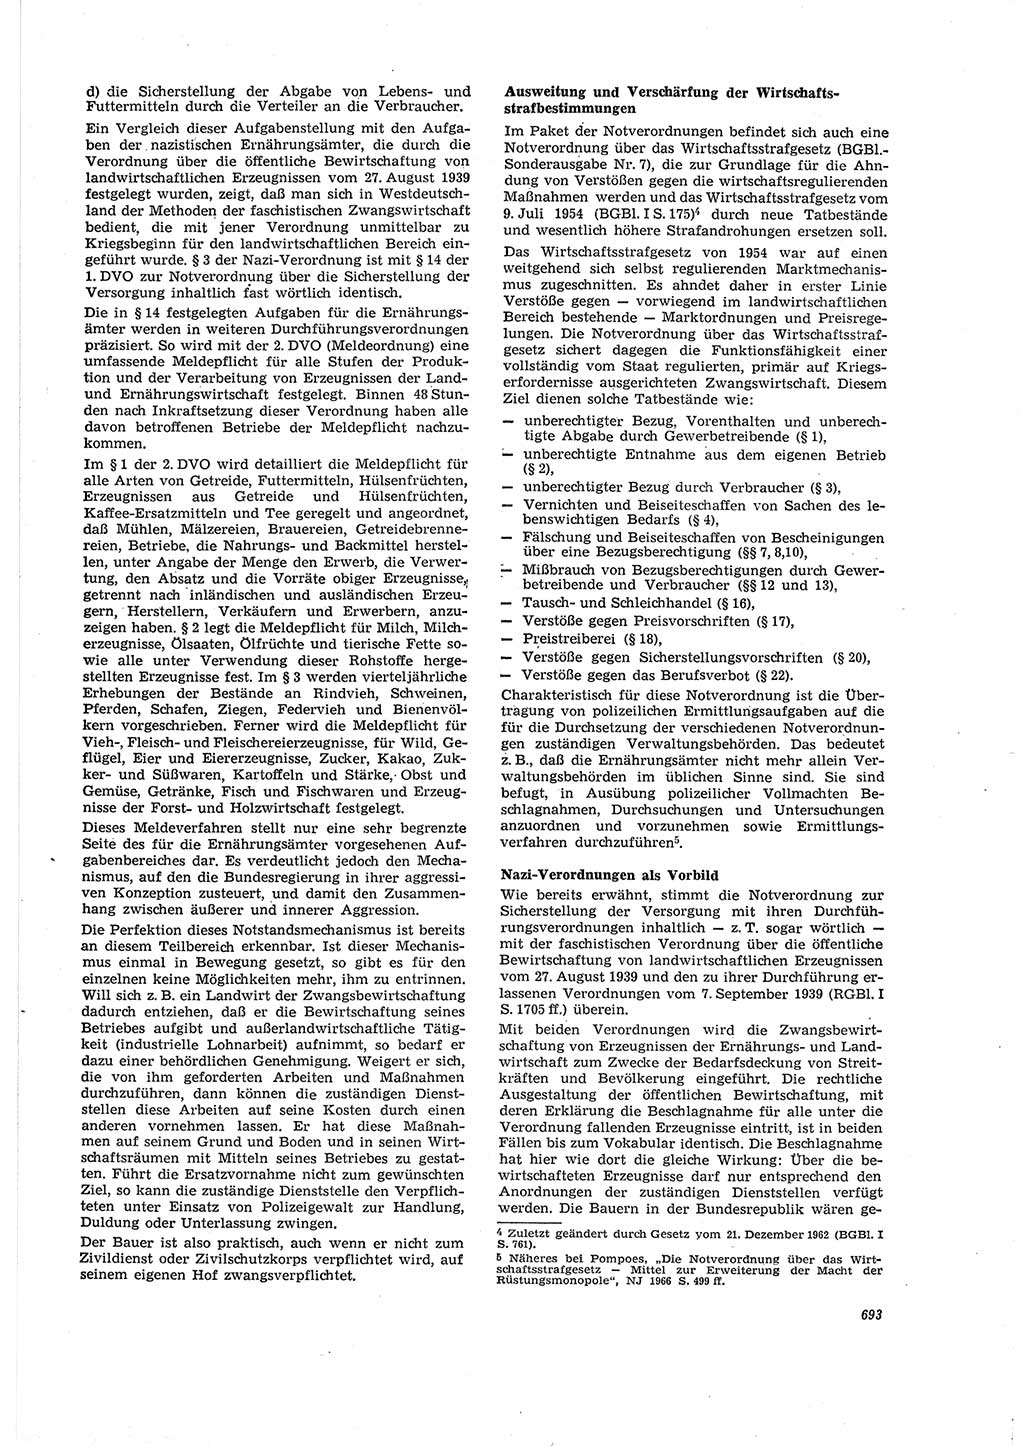 Neue Justiz (NJ), Zeitschrift für Recht und Rechtswissenschaft [Deutsche Demokratische Republik (DDR)], 20. Jahrgang 1966, Seite 693 (NJ DDR 1966, S. 693)